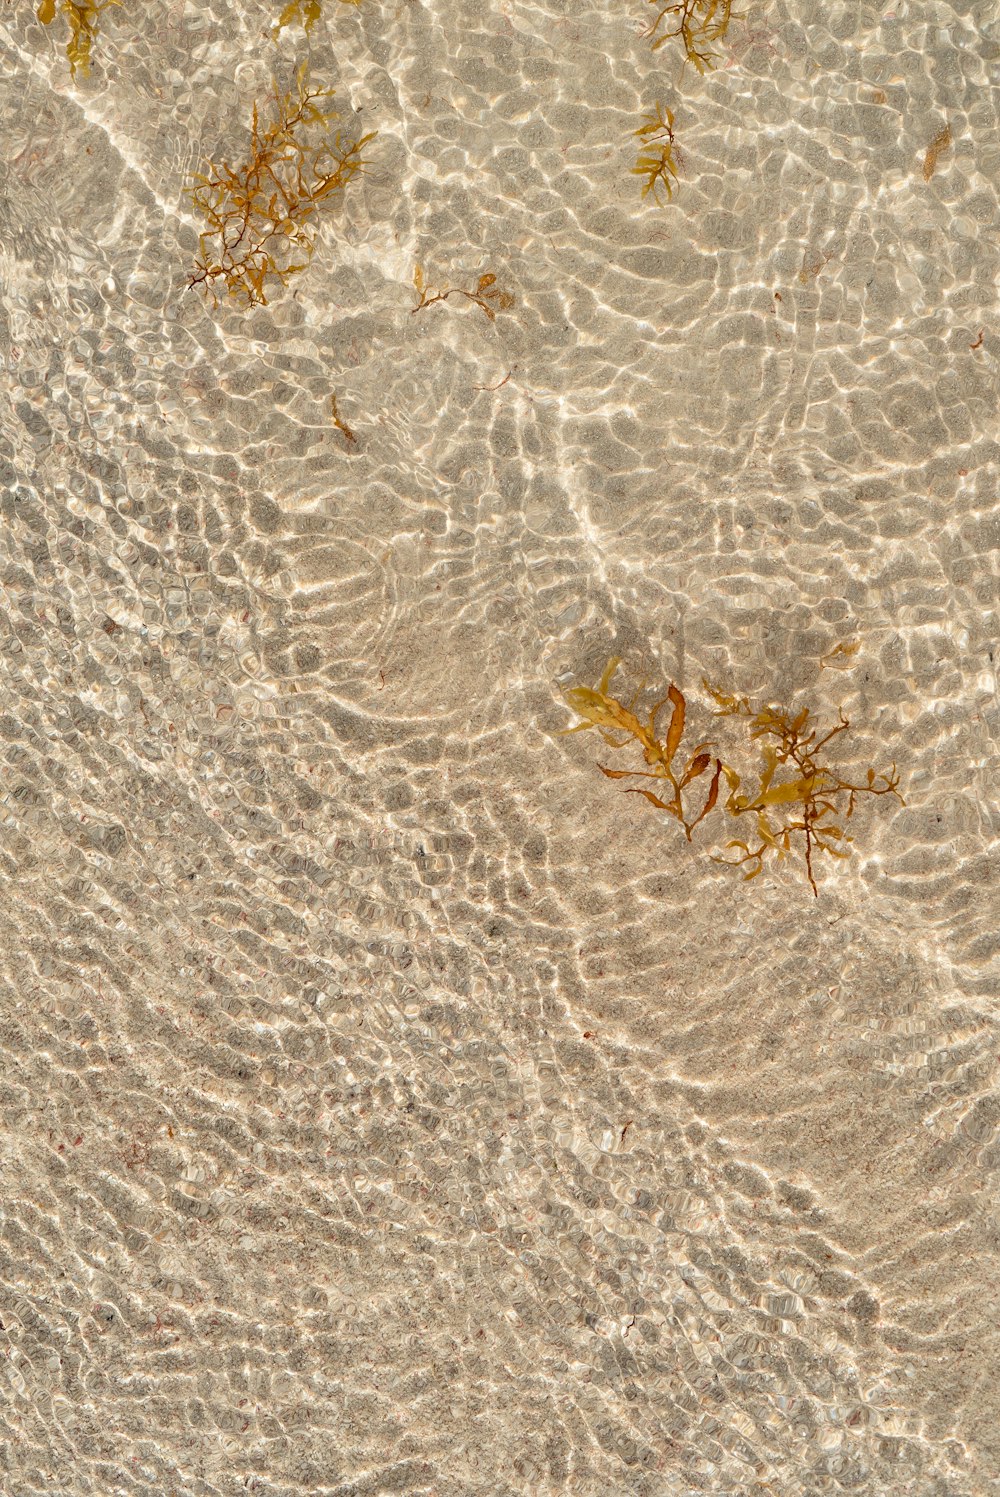 Un grupo de algas flotando en la cima de una playa de arena